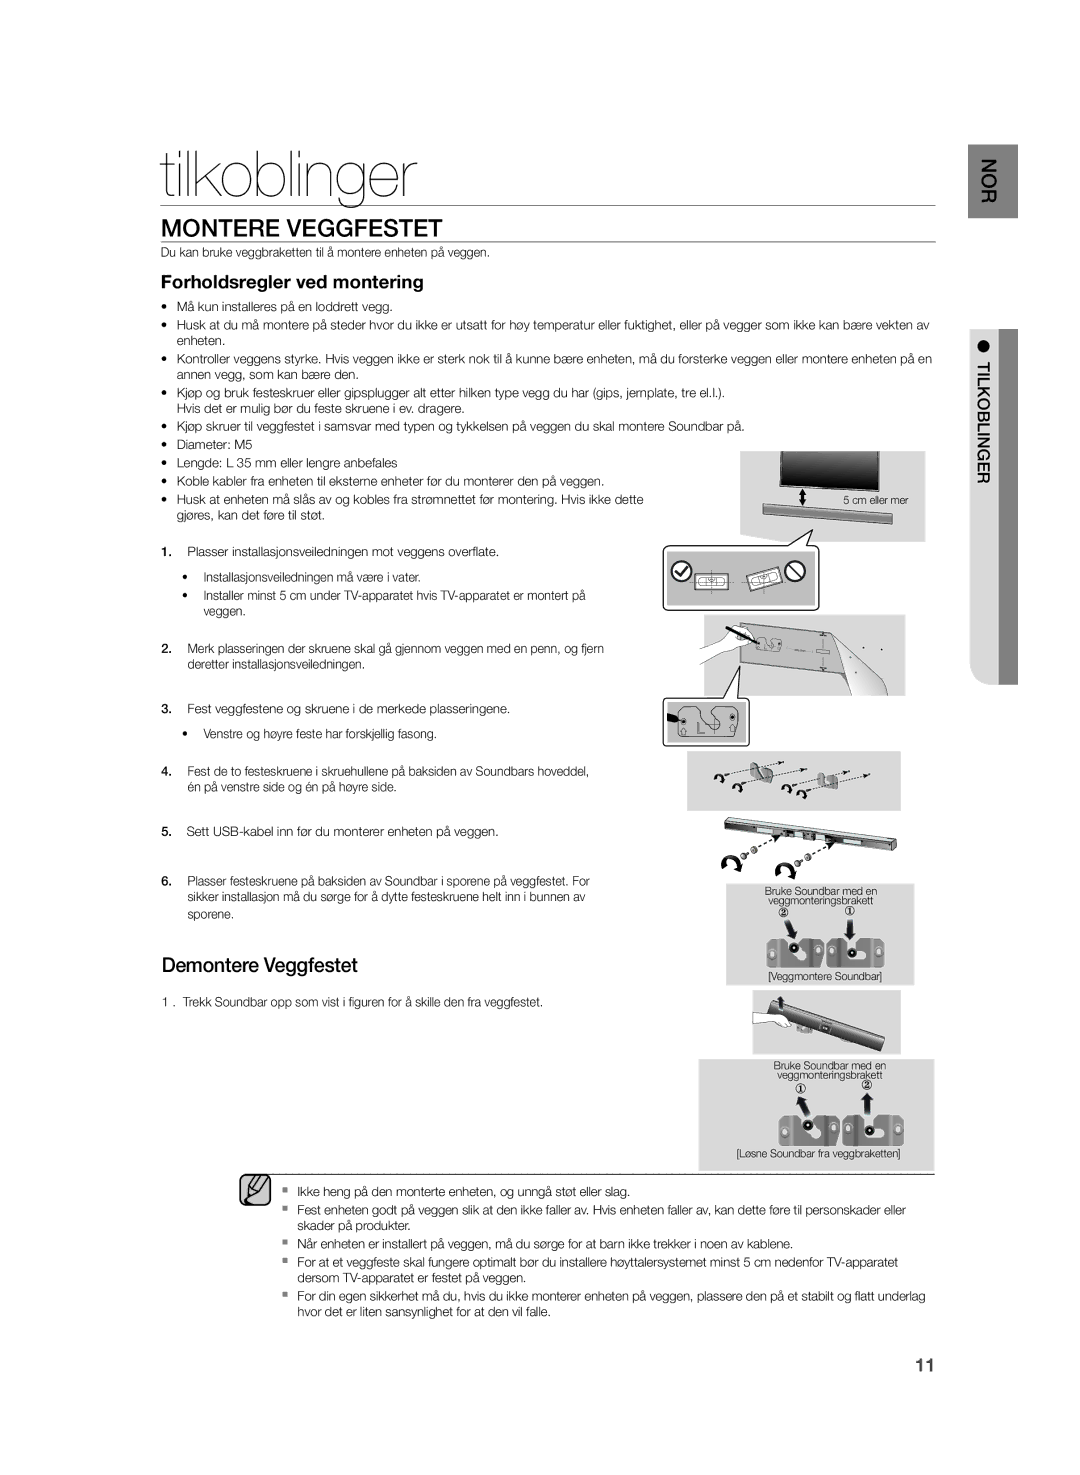 Samsung HW-H355/XE manual Tilkoblinger, Montere Veggfestet, Forholdsregler ved montering 